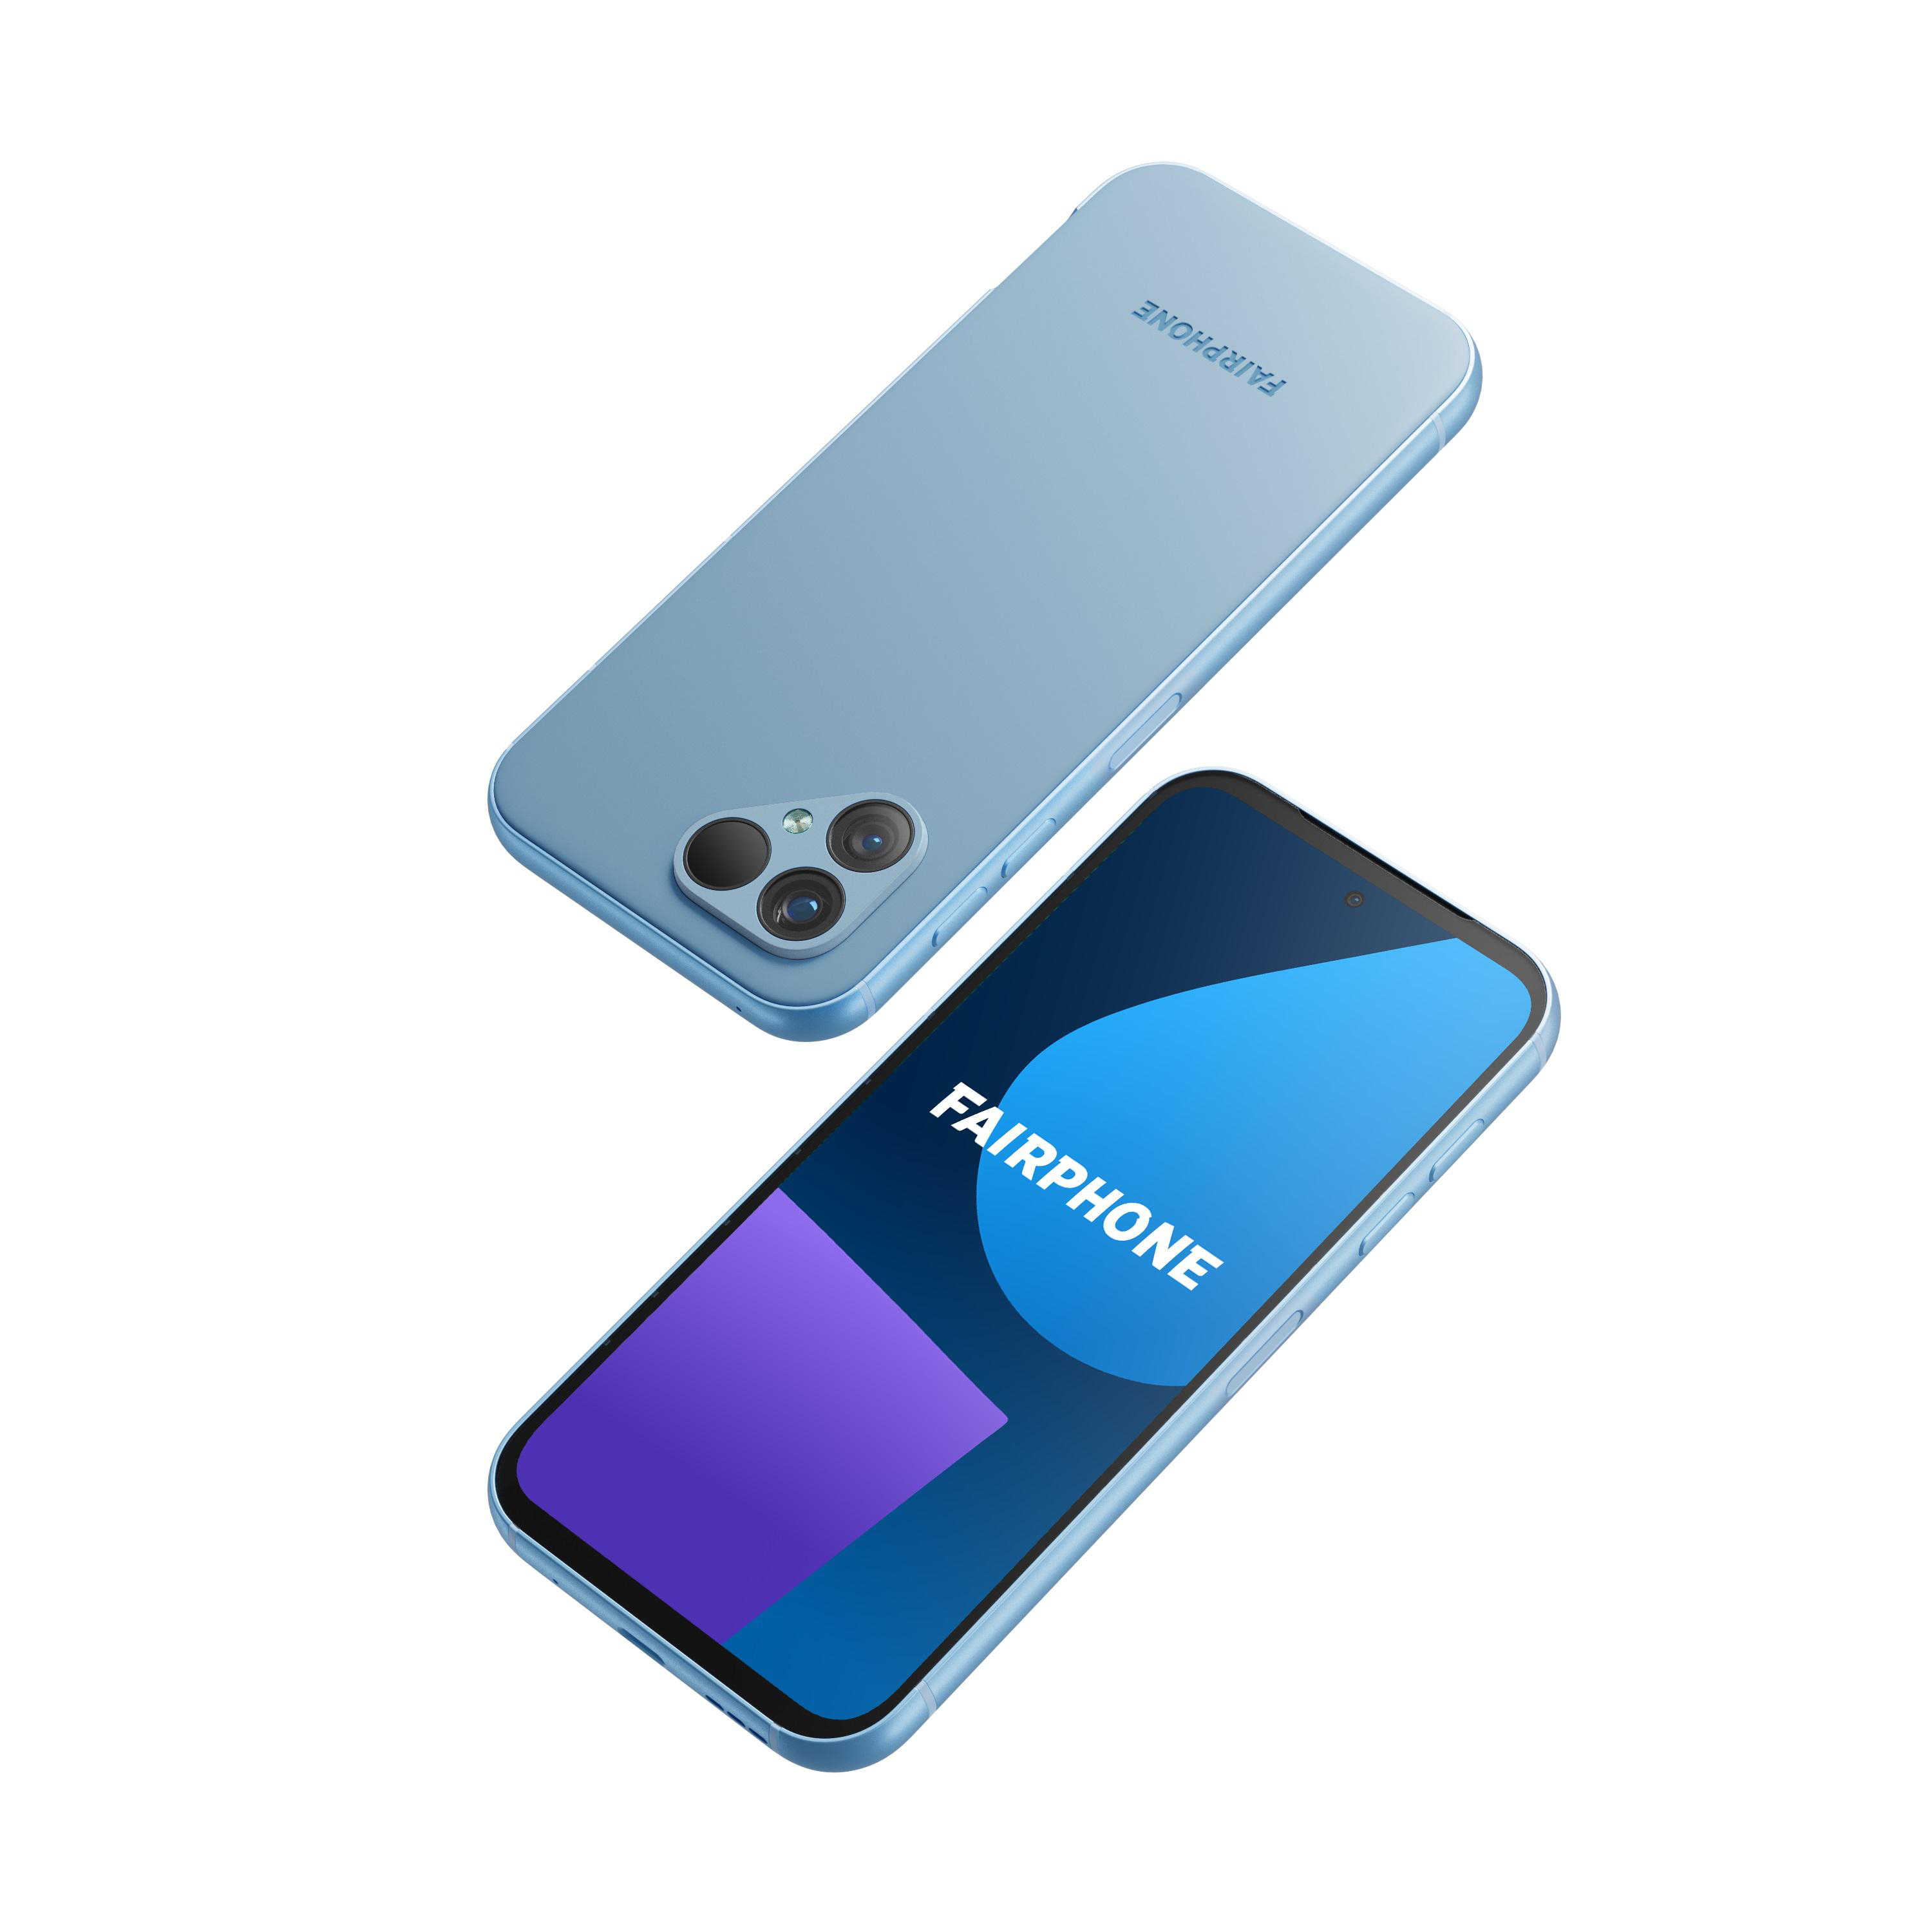 FAIRPHONE 5 SIM 256 GB Blue Dual